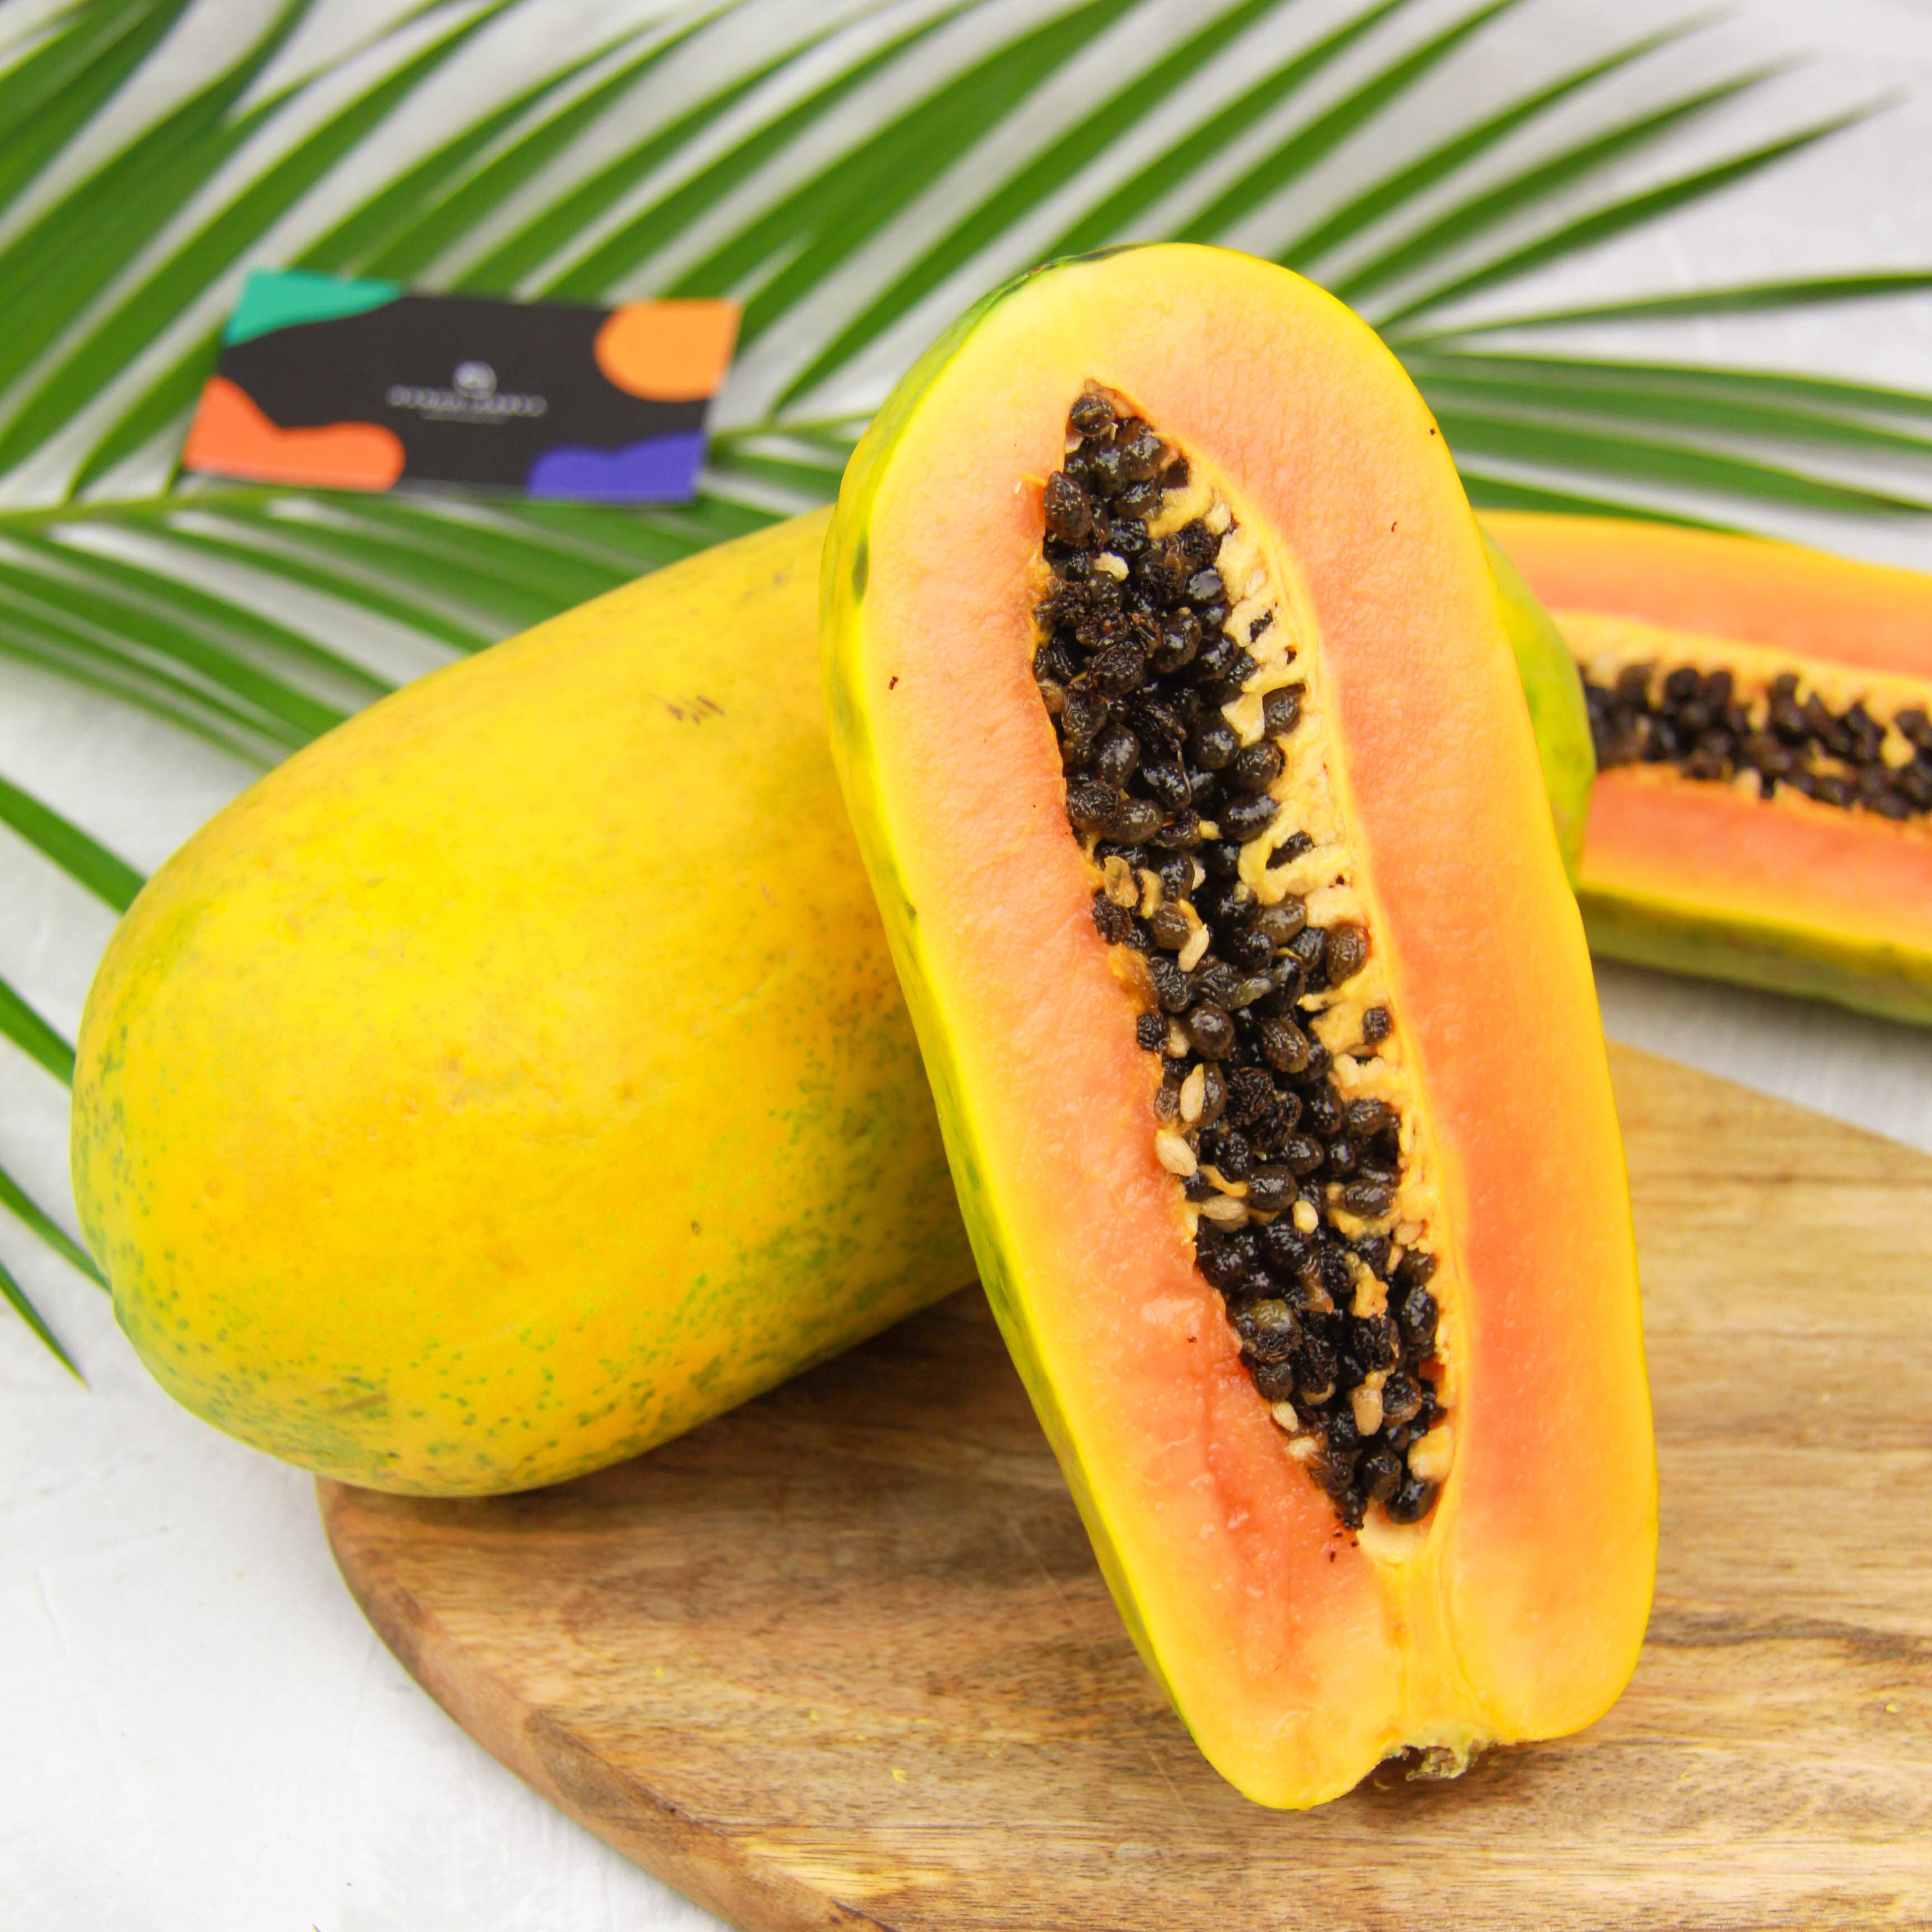 манго и папайя картинки окружающий мир